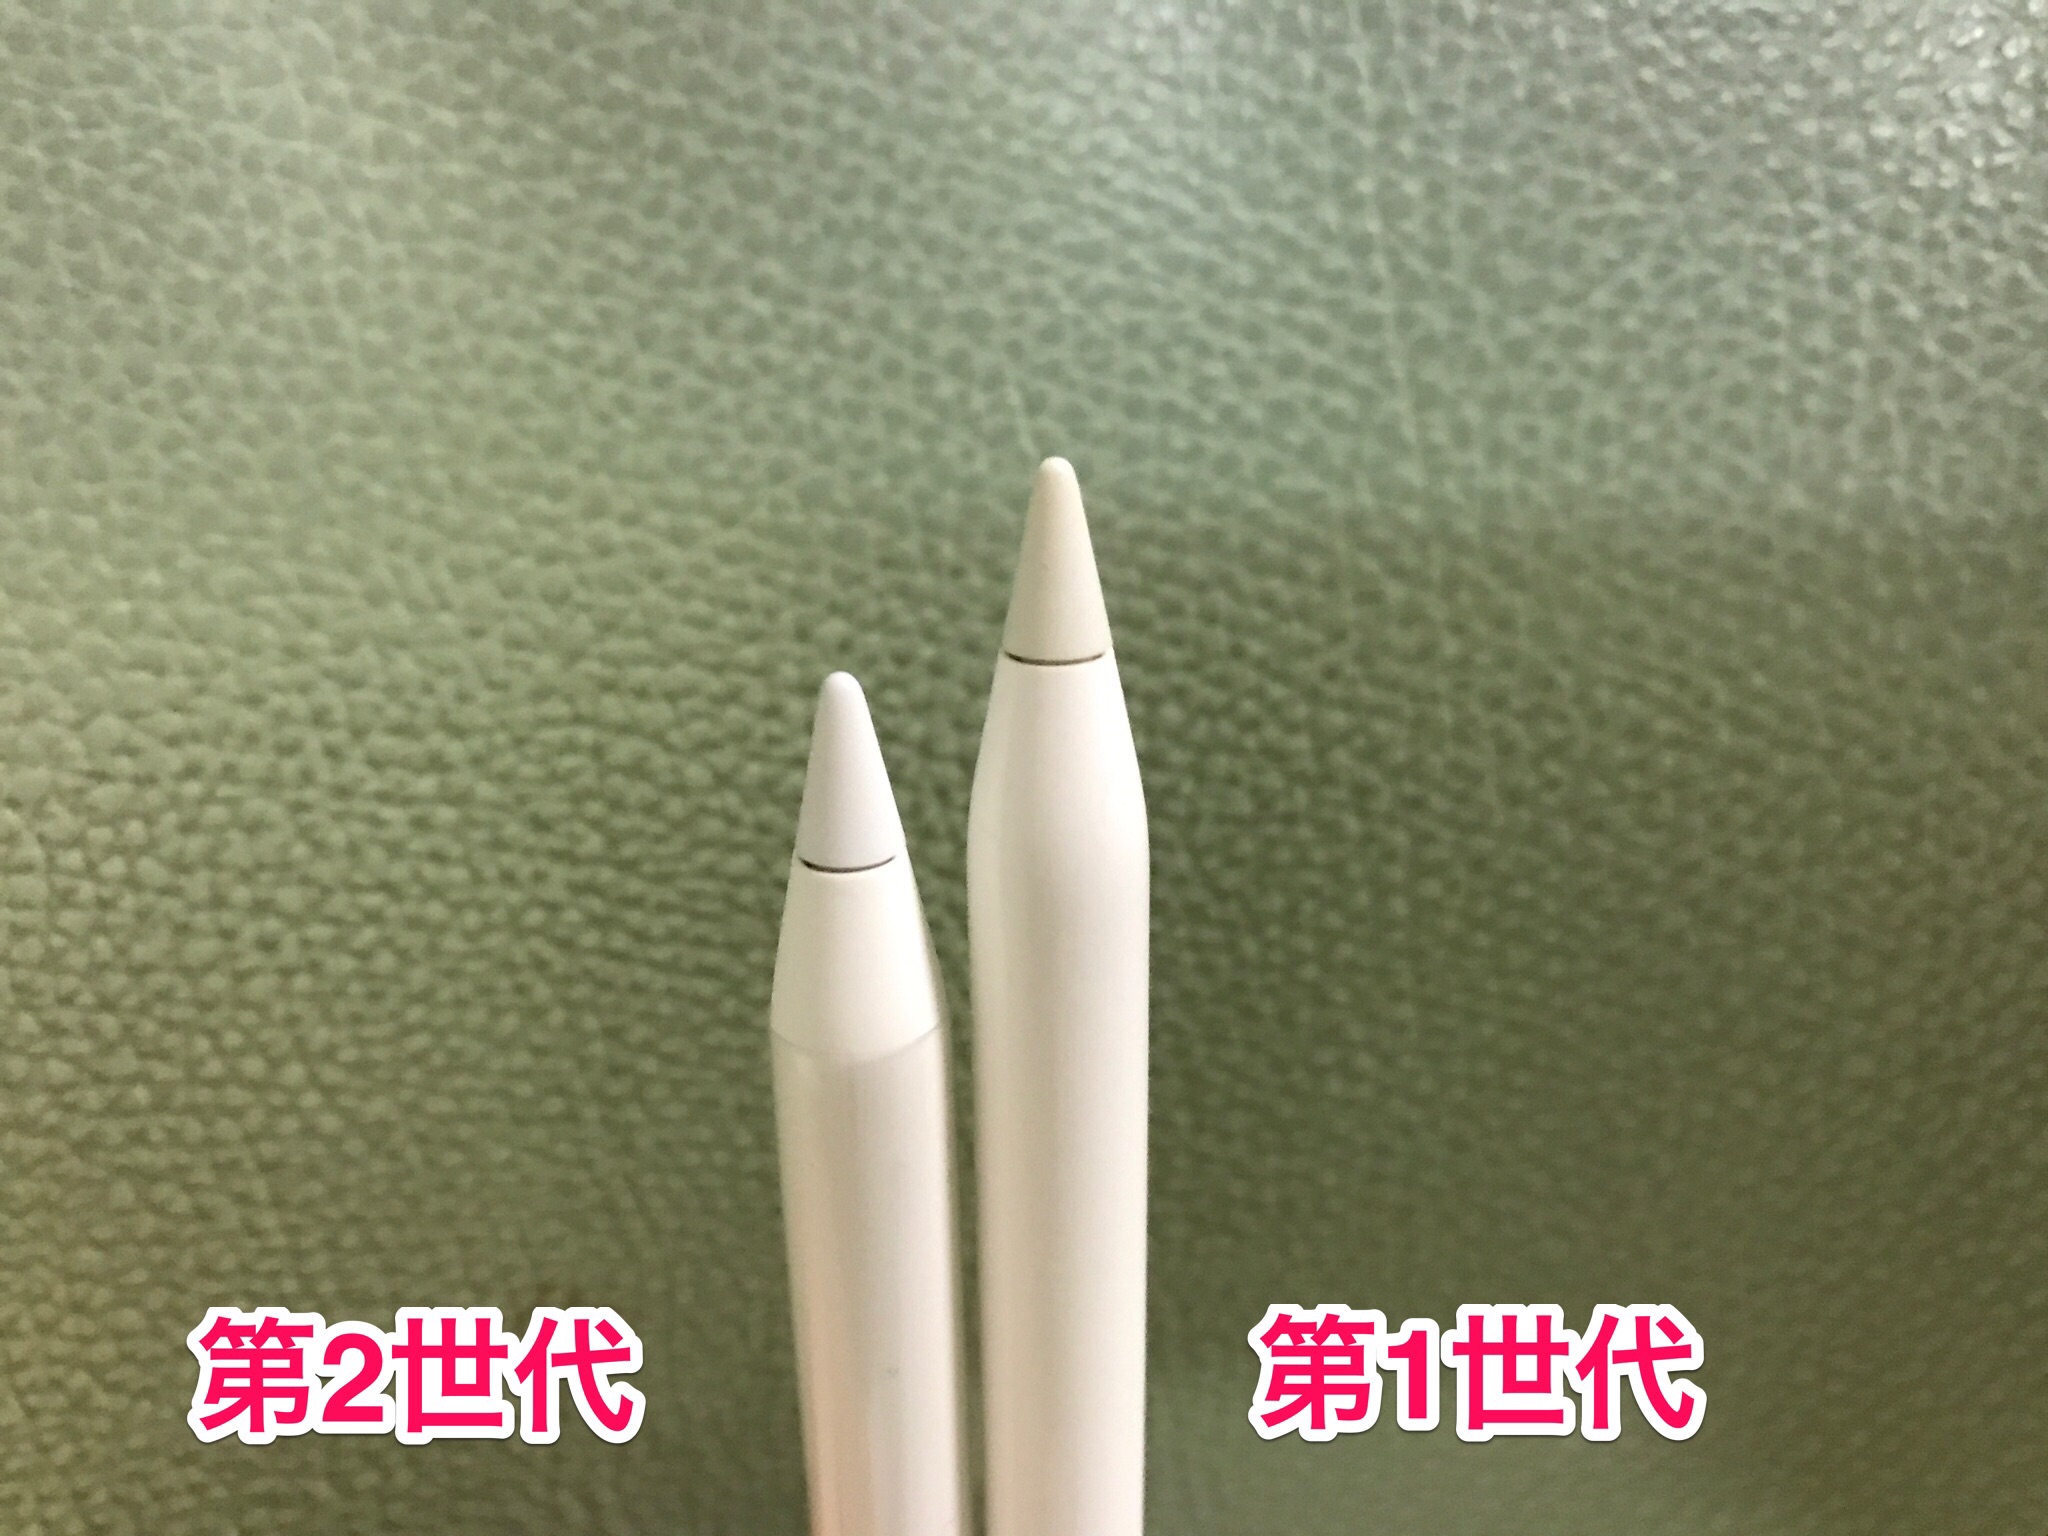 スマートフォン/携帯電話 その他 Apple Pencil 第2世代 umbandung.ac.id